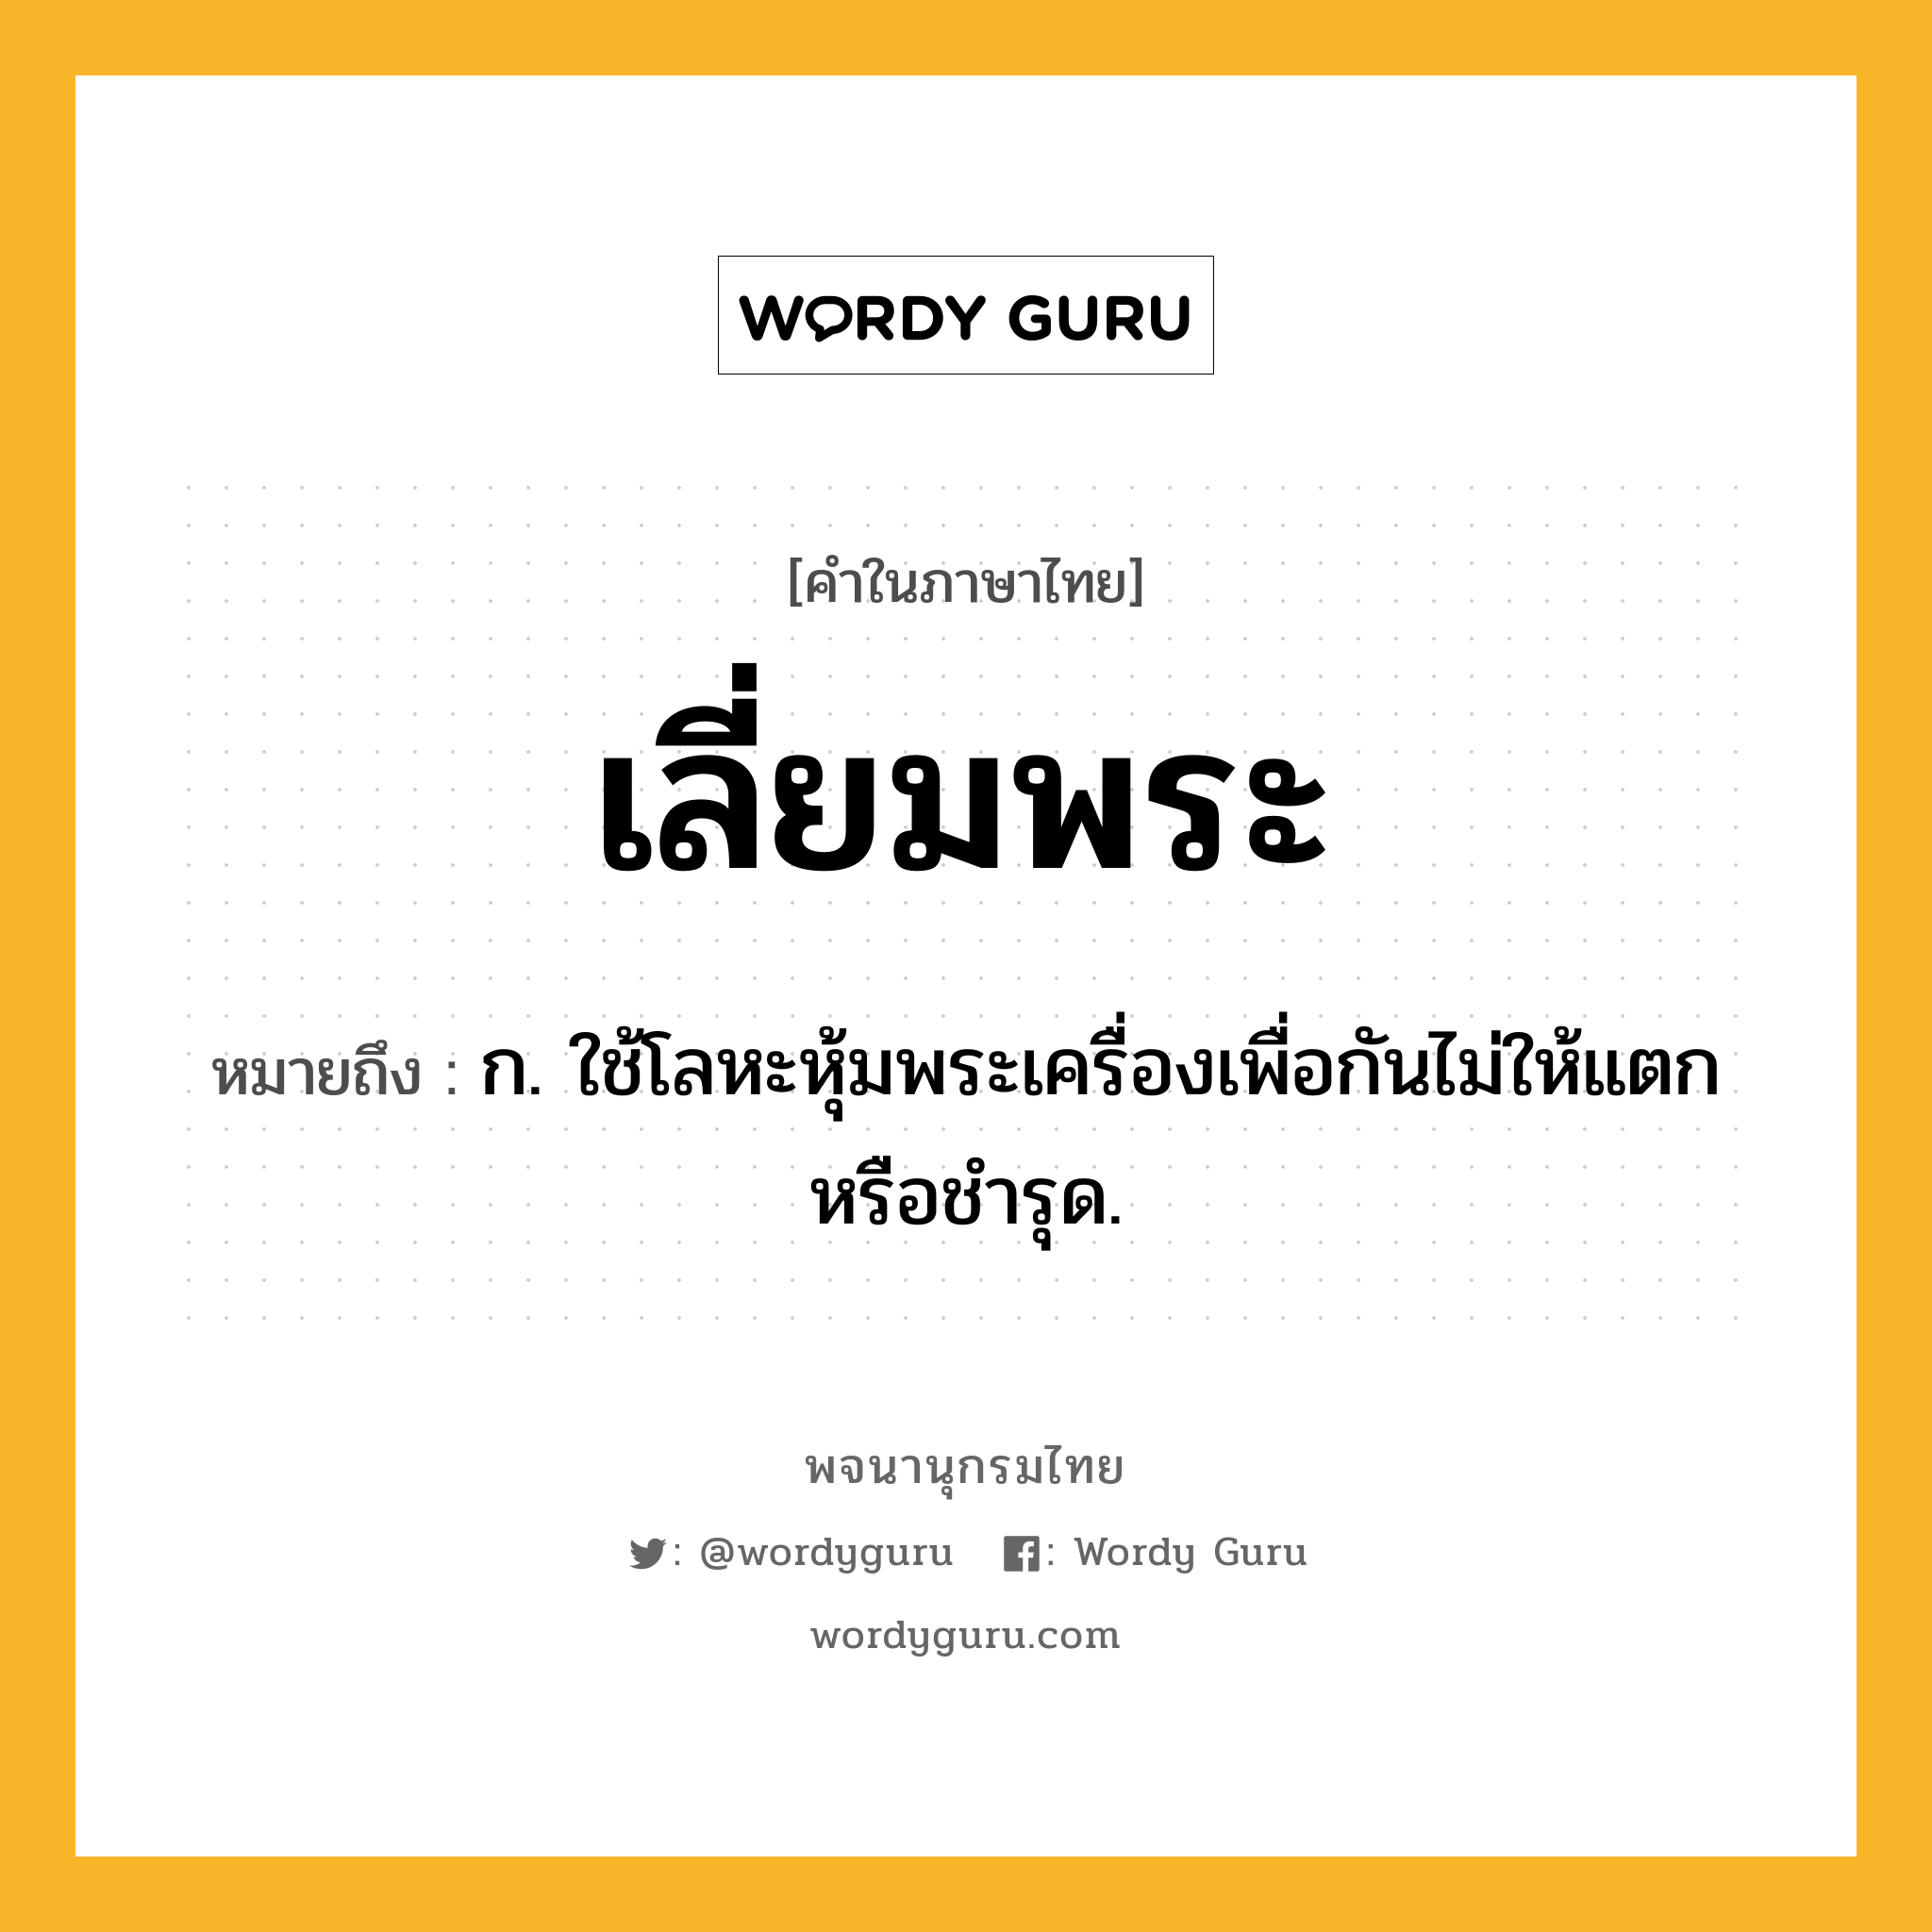 เลี่ยมพระ ความหมาย หมายถึงอะไร?, คำในภาษาไทย เลี่ยมพระ หมายถึง ก. ใช้โลหะหุ้มพระเครื่องเพื่อกันไม่ให้แตกหรือชำรุด.